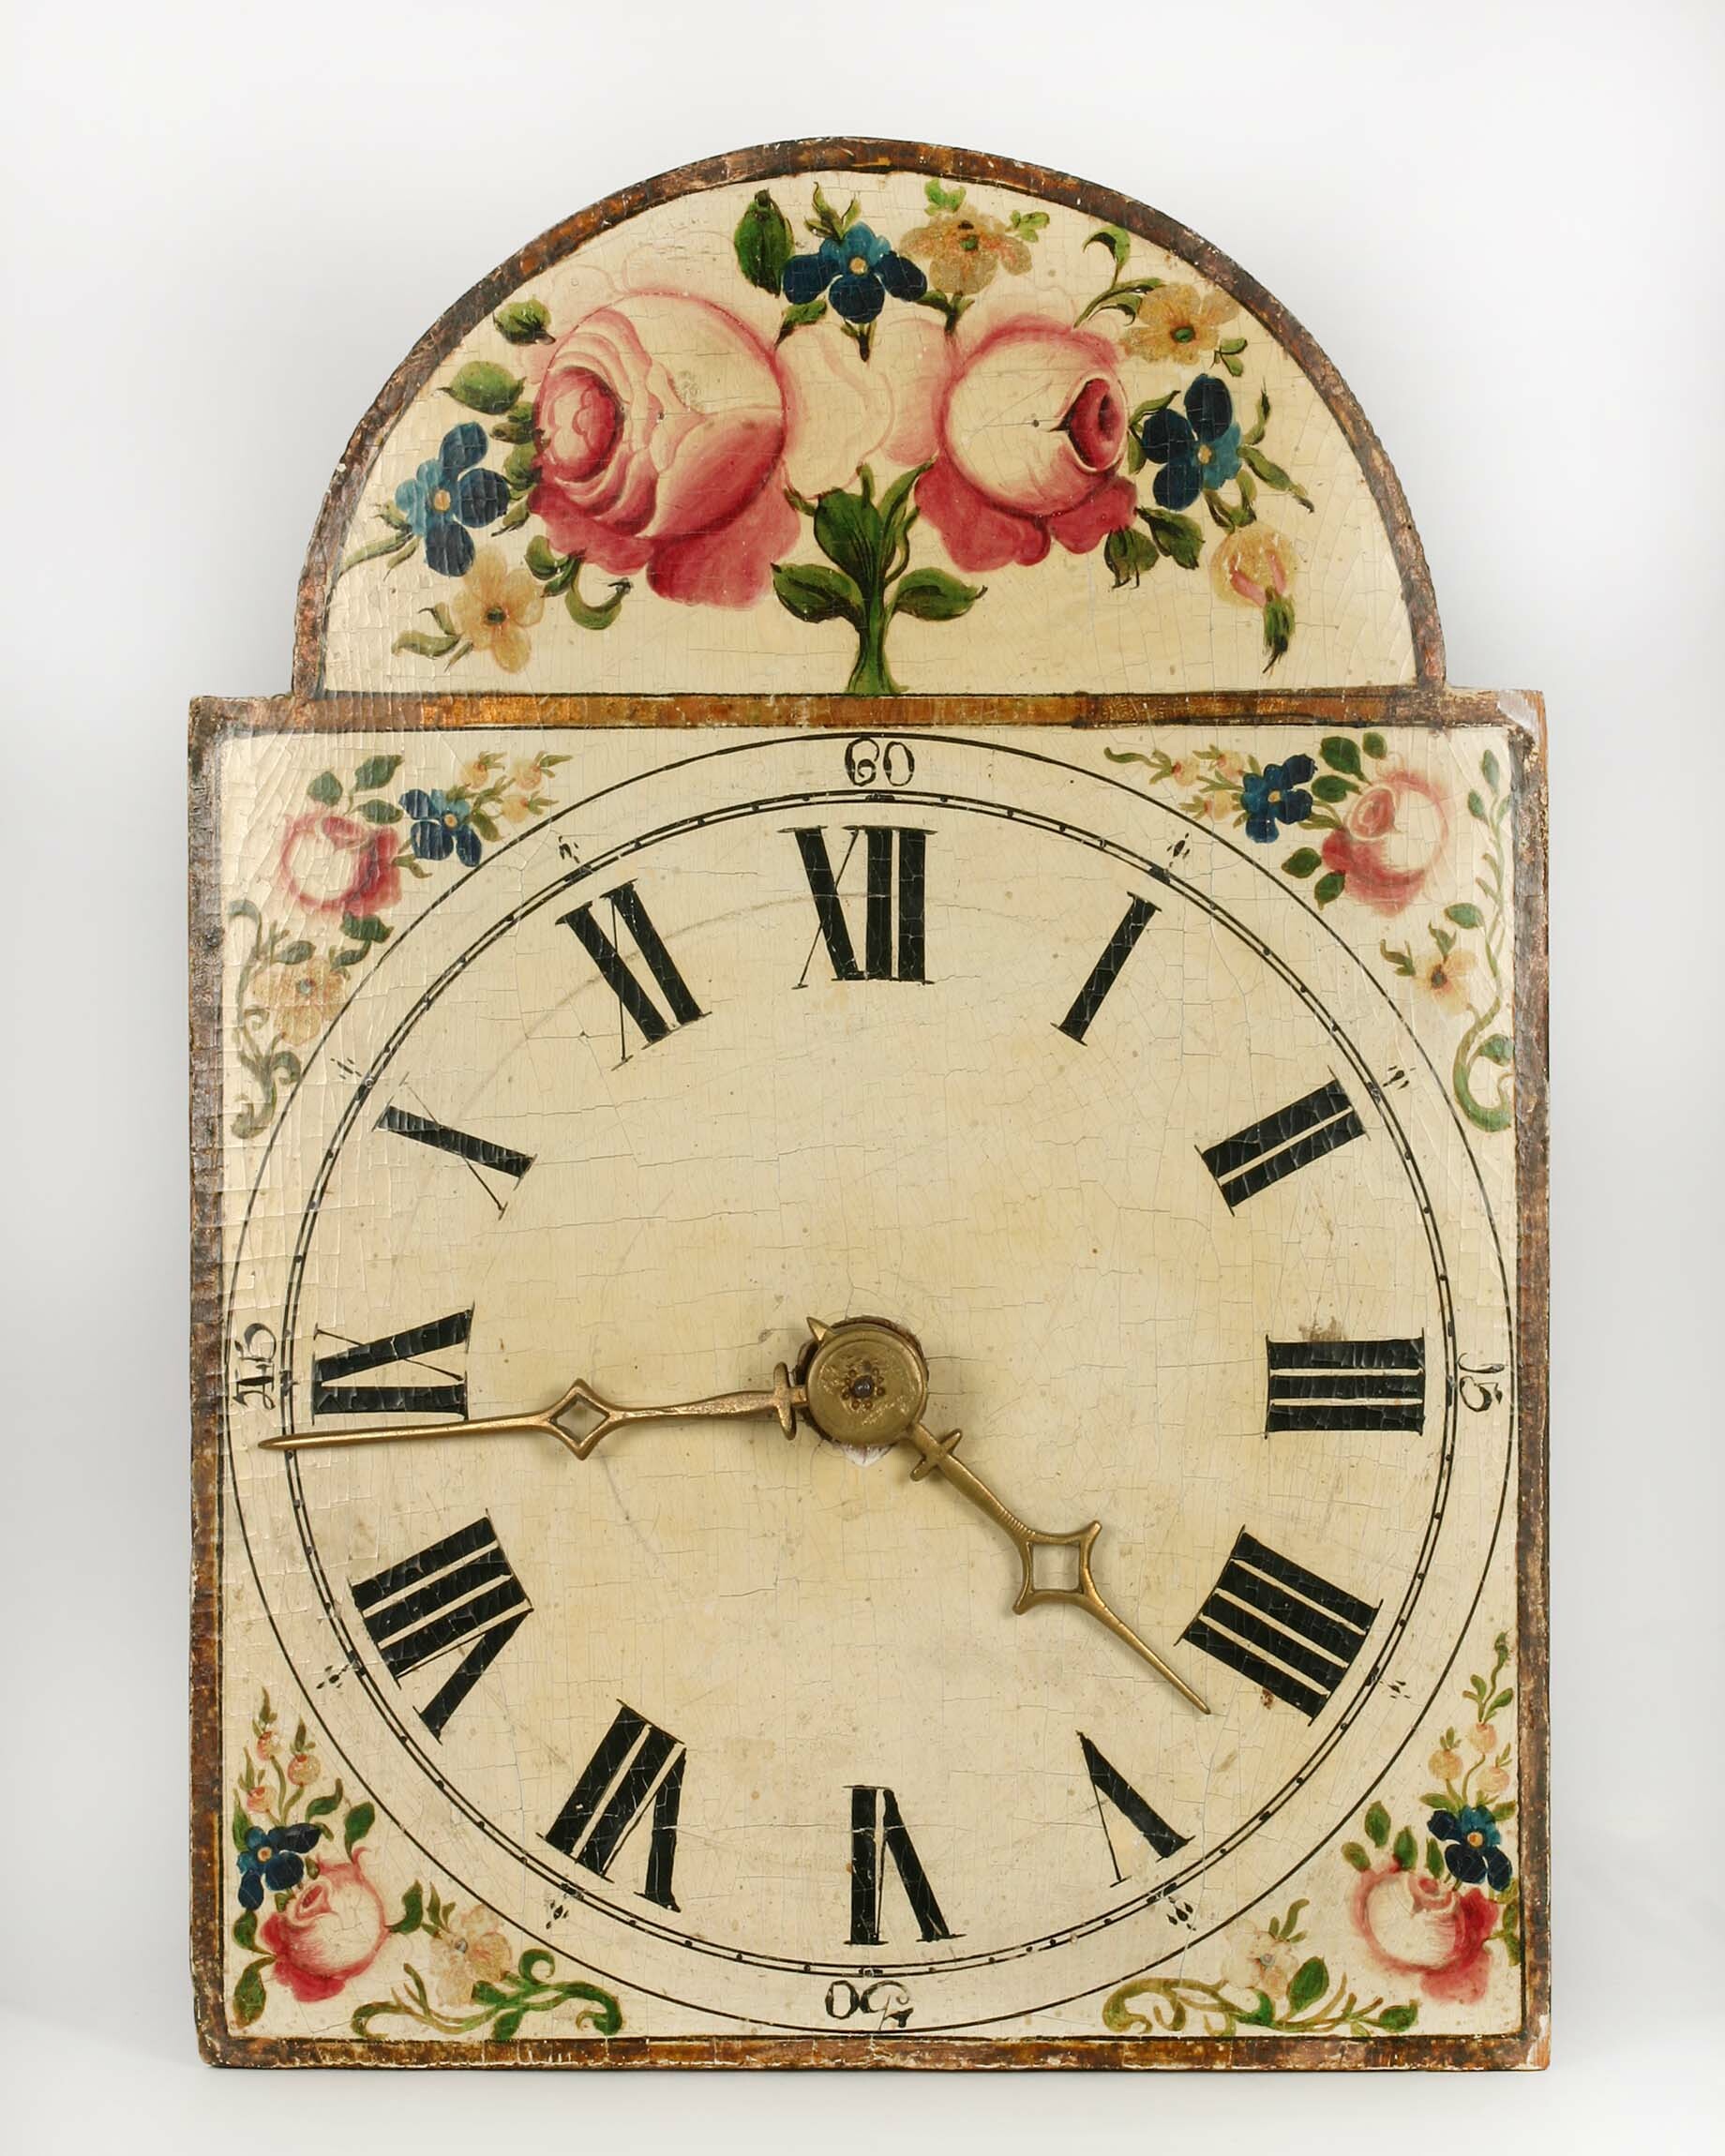 Lackschilduhr, Schwarzwald, um 1810 (Deutsches Uhrenmuseum CC BY-SA)